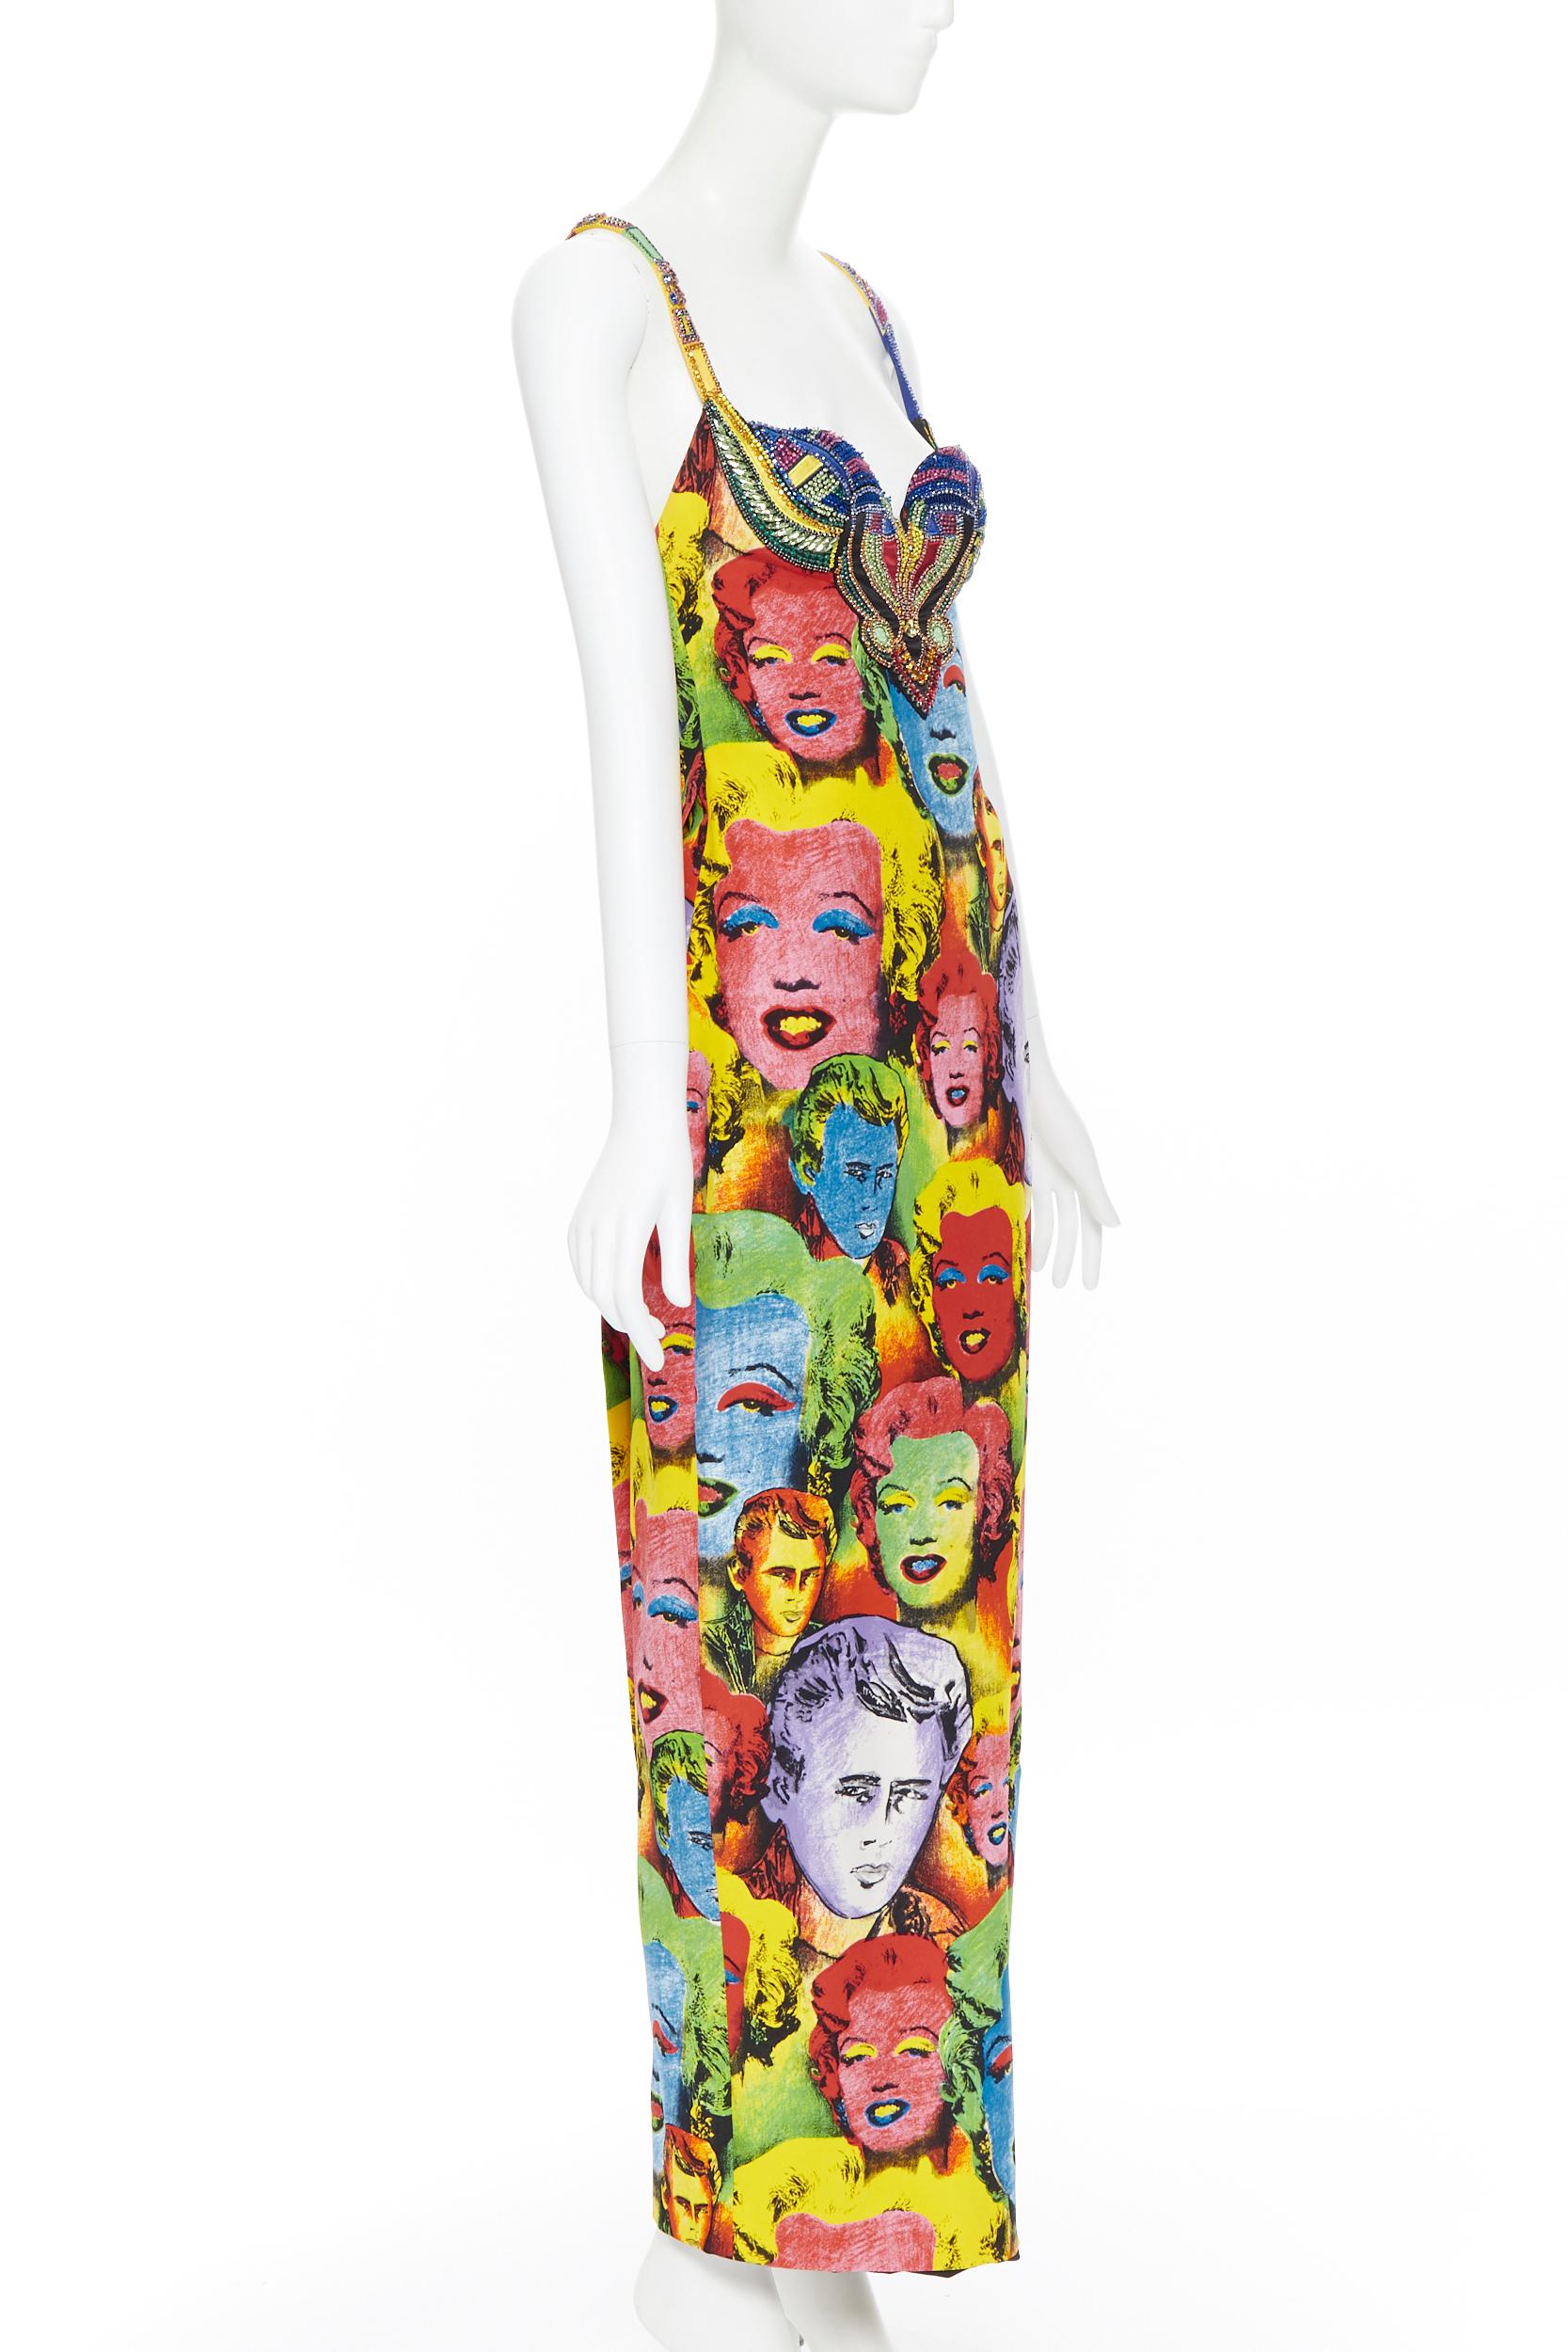 versace pop art dress